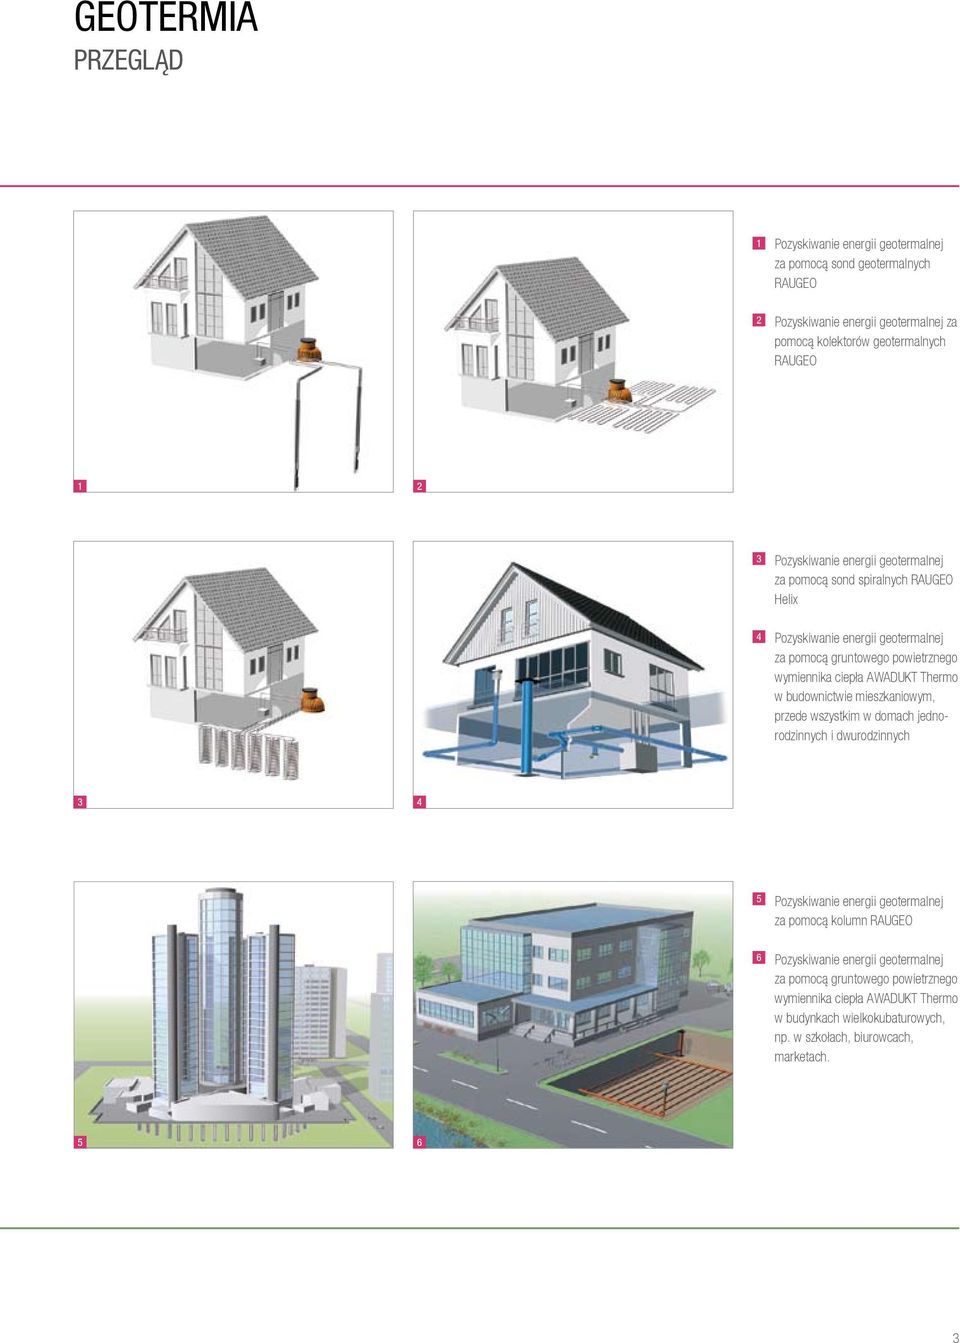 AWADUKT Thermo w budownictwie mieszkaniowym, przede wszystkim w domach jednorodzinnych i dwurodzinnych 3 4 5 Pozyskiwanie energii geotermalnej za pomocą kolumn RAUGEO 6